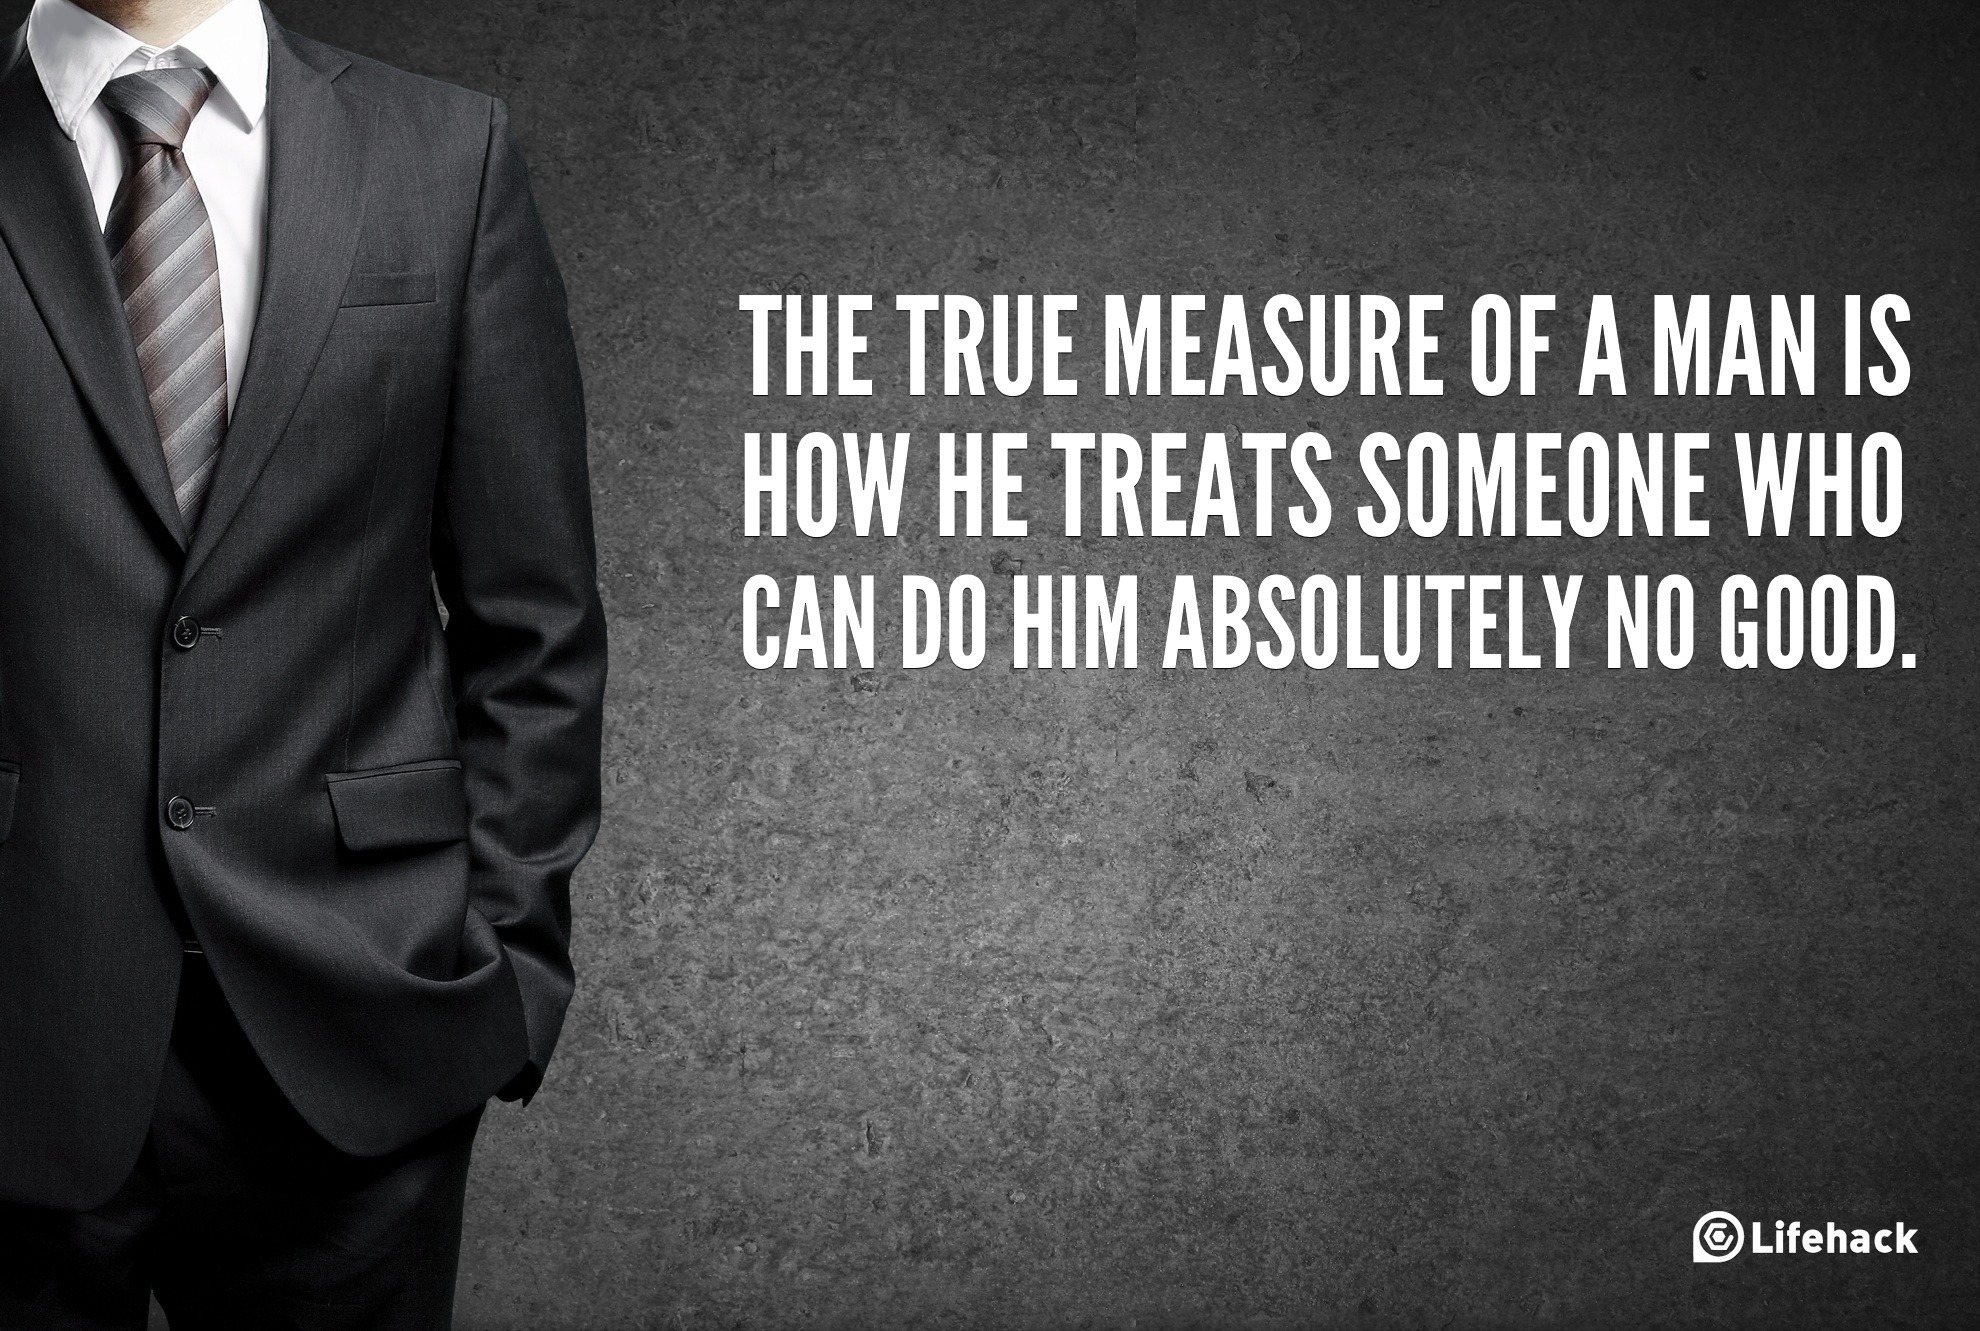 30sec Tip: The True Measure of a Man